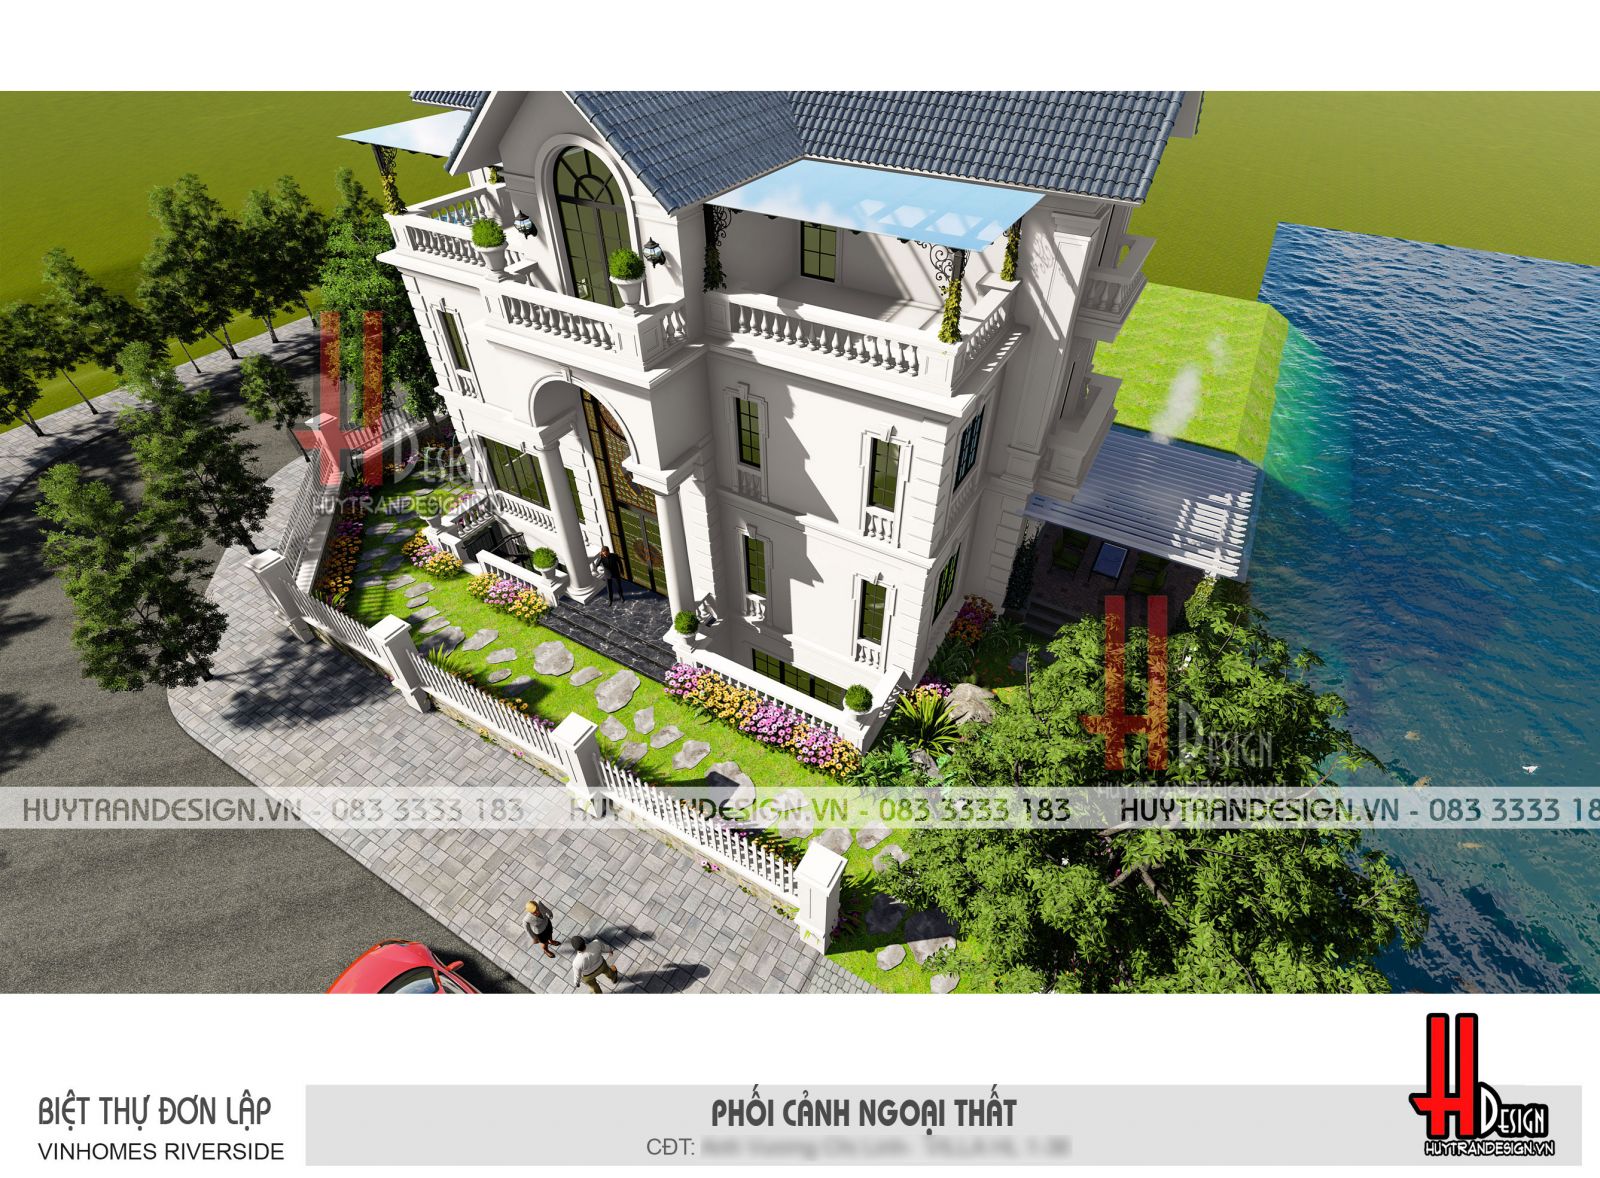 Mẫu thiết kế nhà 3 tầng đẹp - Huytrandesign tư vấn, thiết kế, thi công, sửa chữa nhà đẹp tại Long Biên, Hà Nội - v12